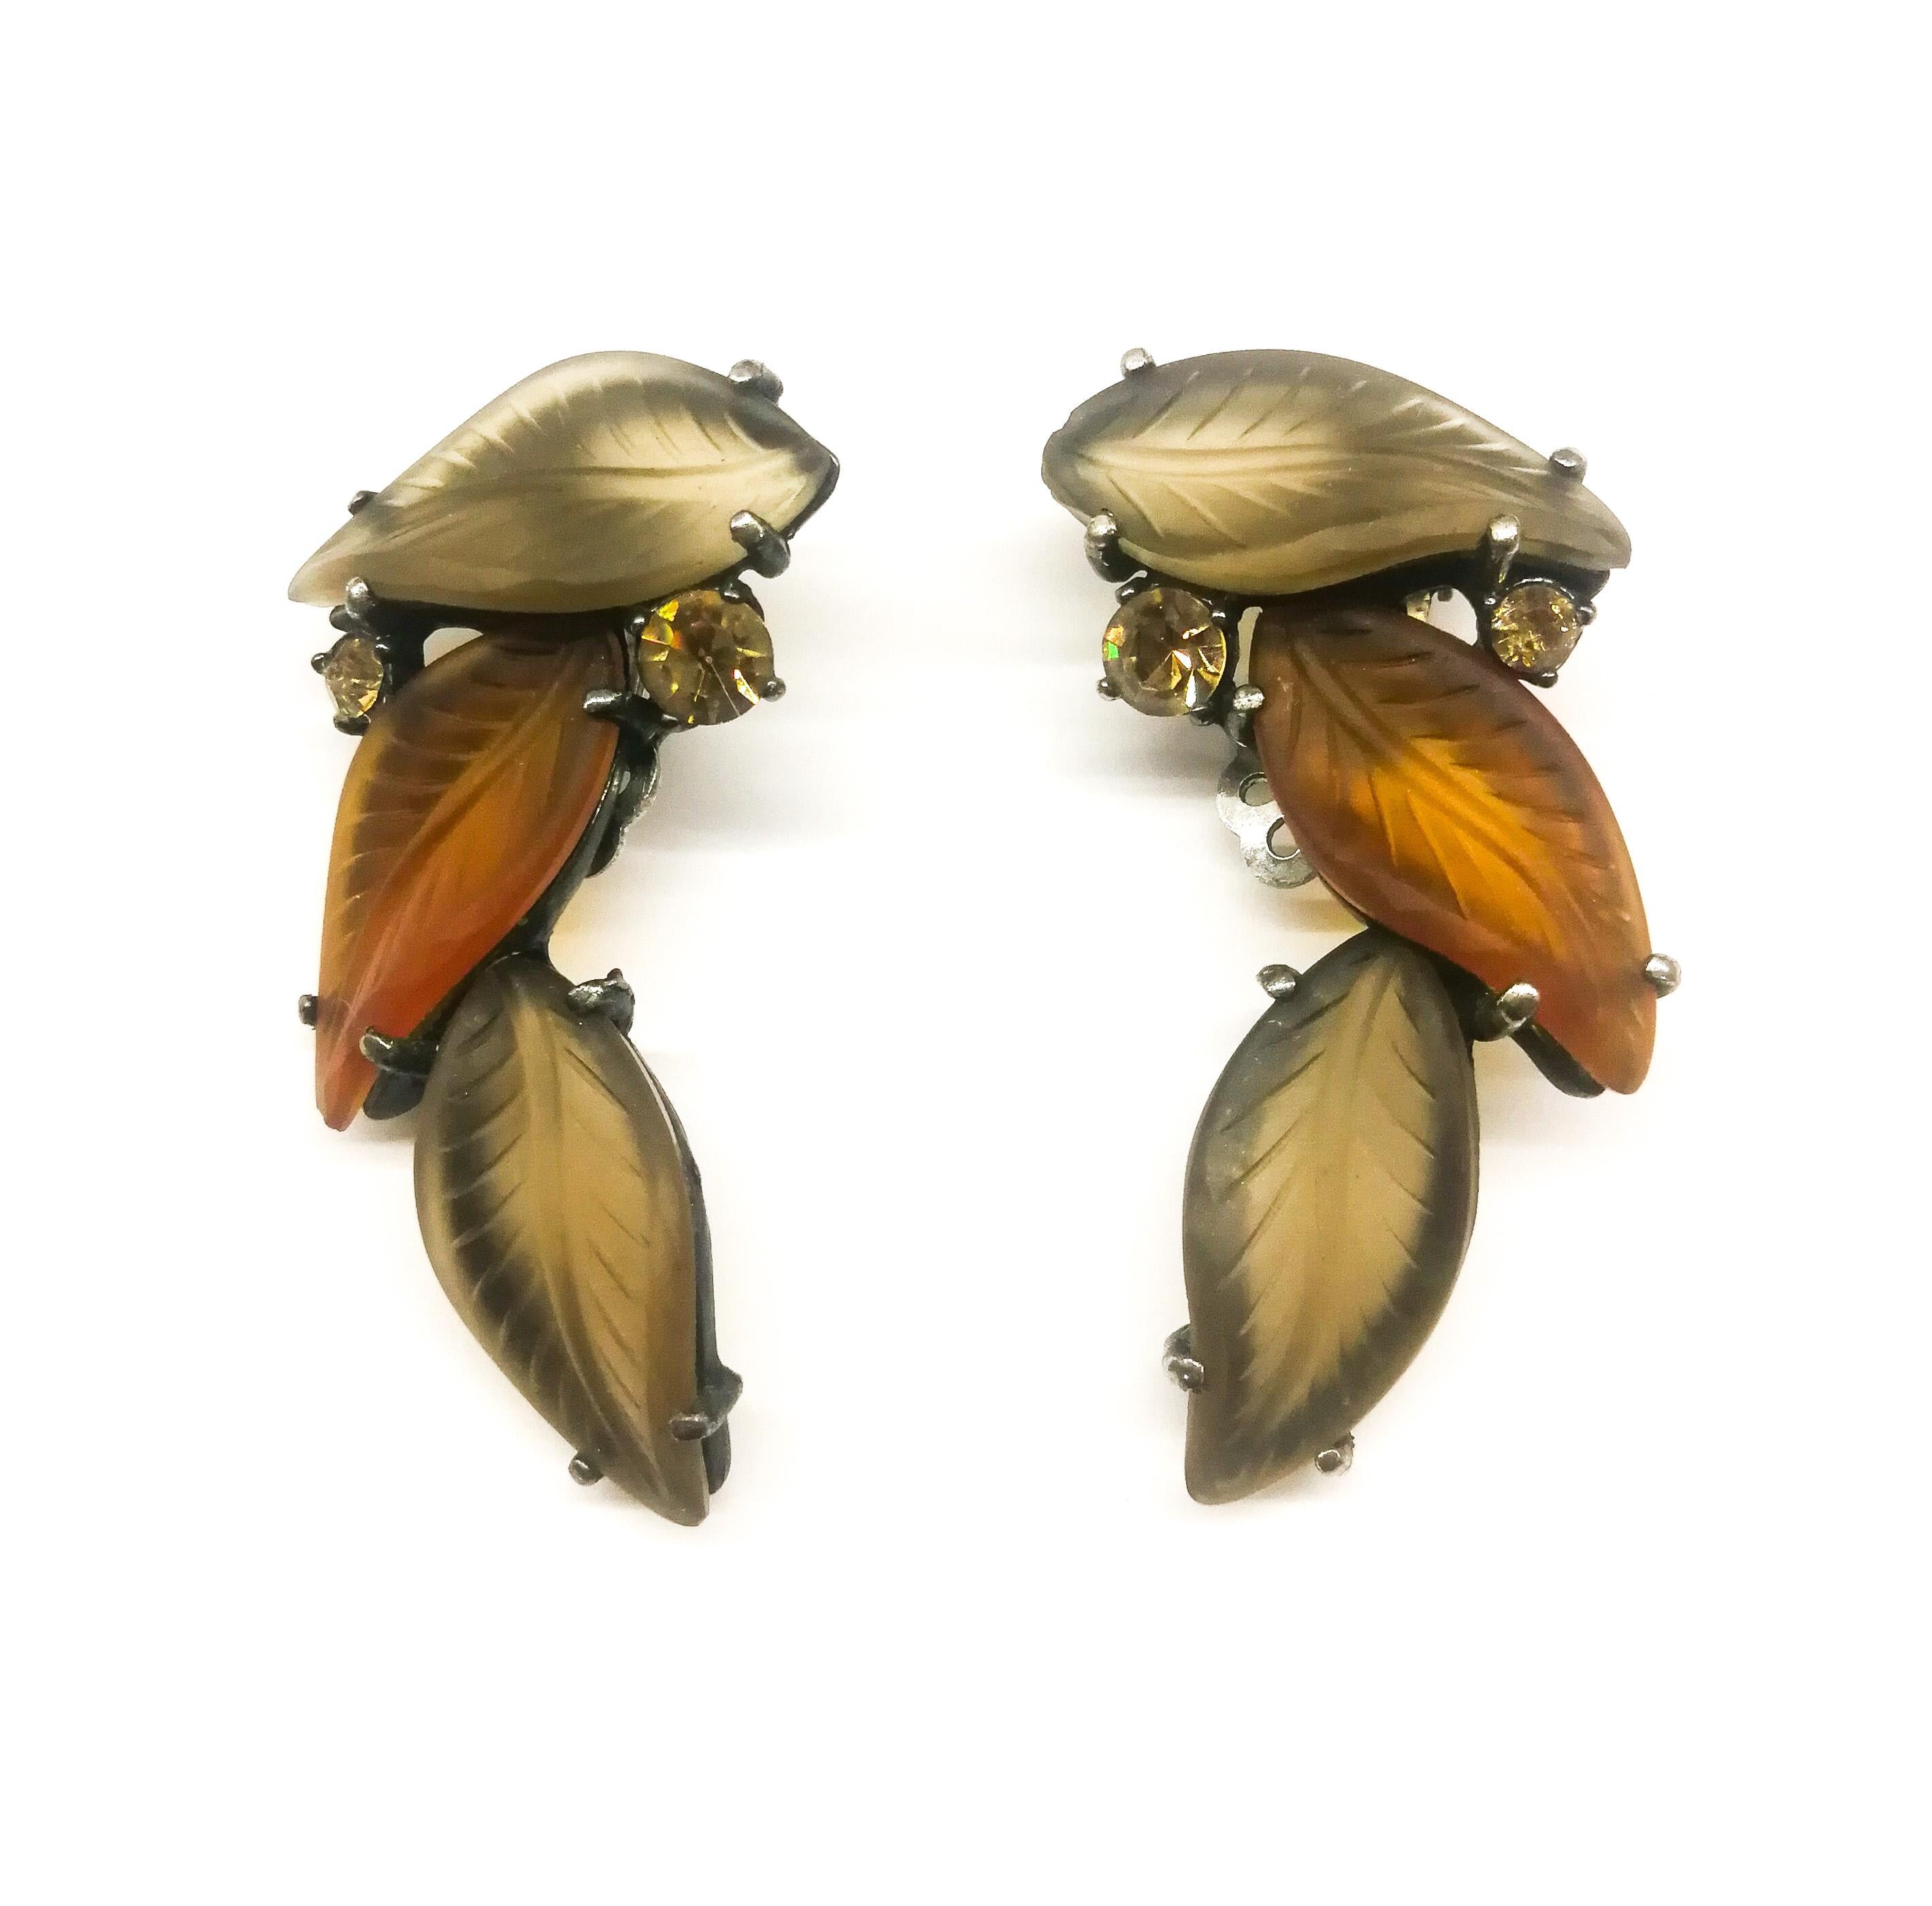 Ces somptueuses boucles d'oreilles datent de la dernière période du design Schiaparelli, dans les années 1950, mais sont l'une de ses créations les plus frappantes et élégantes. Rappelant le verre Lalique, dans des tons doux et chauds de brun, elles